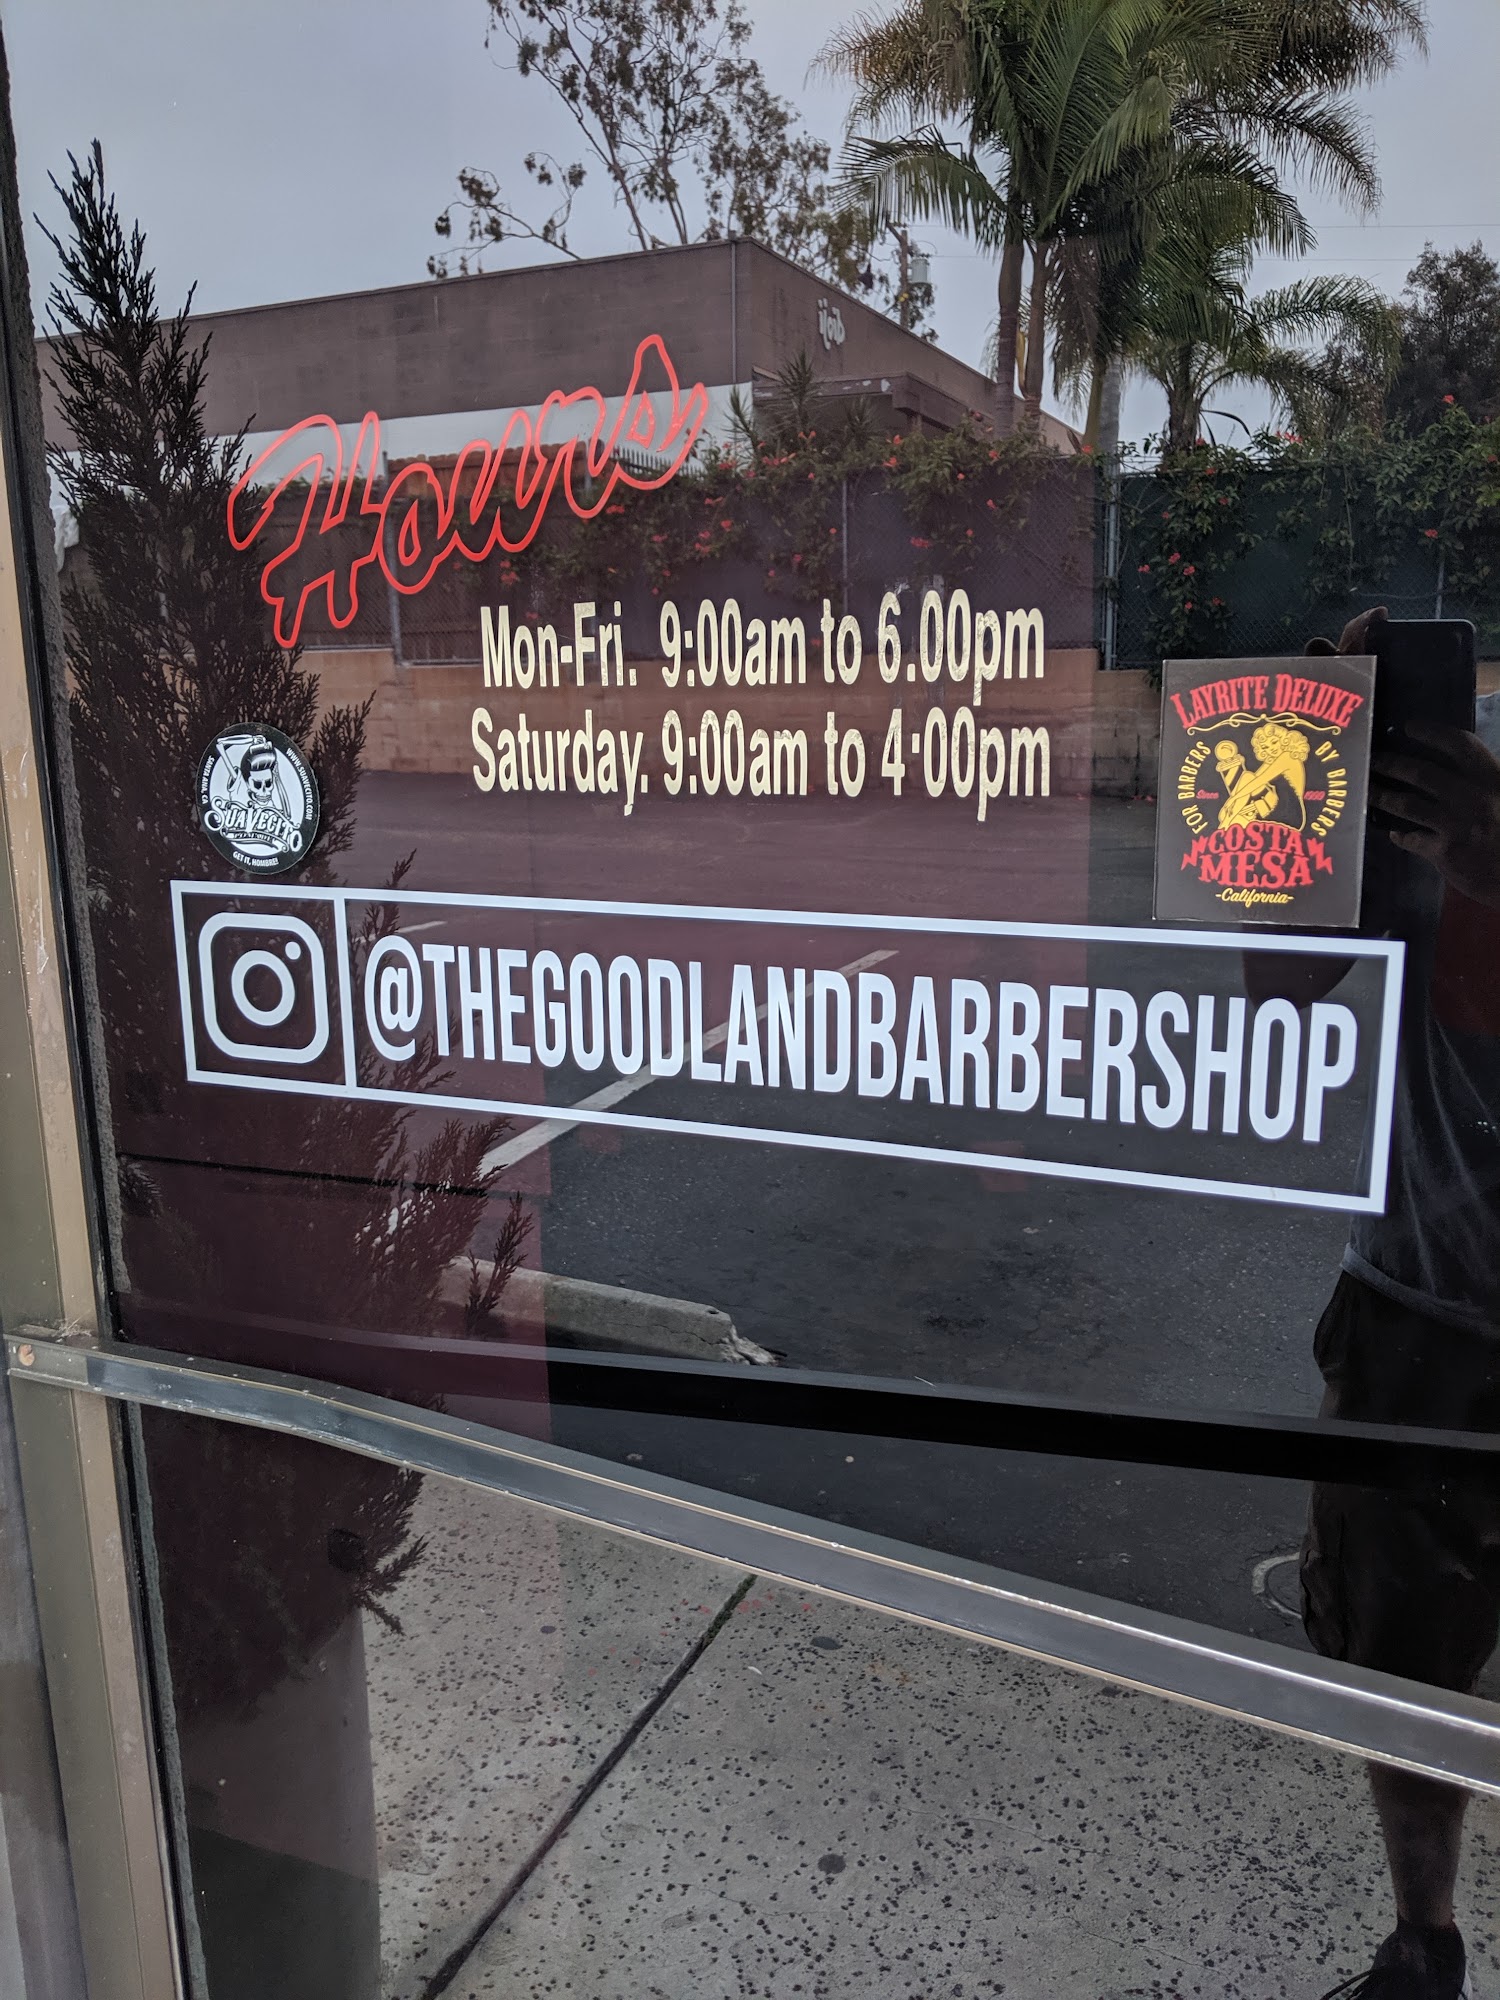 Goodland Barber Shop